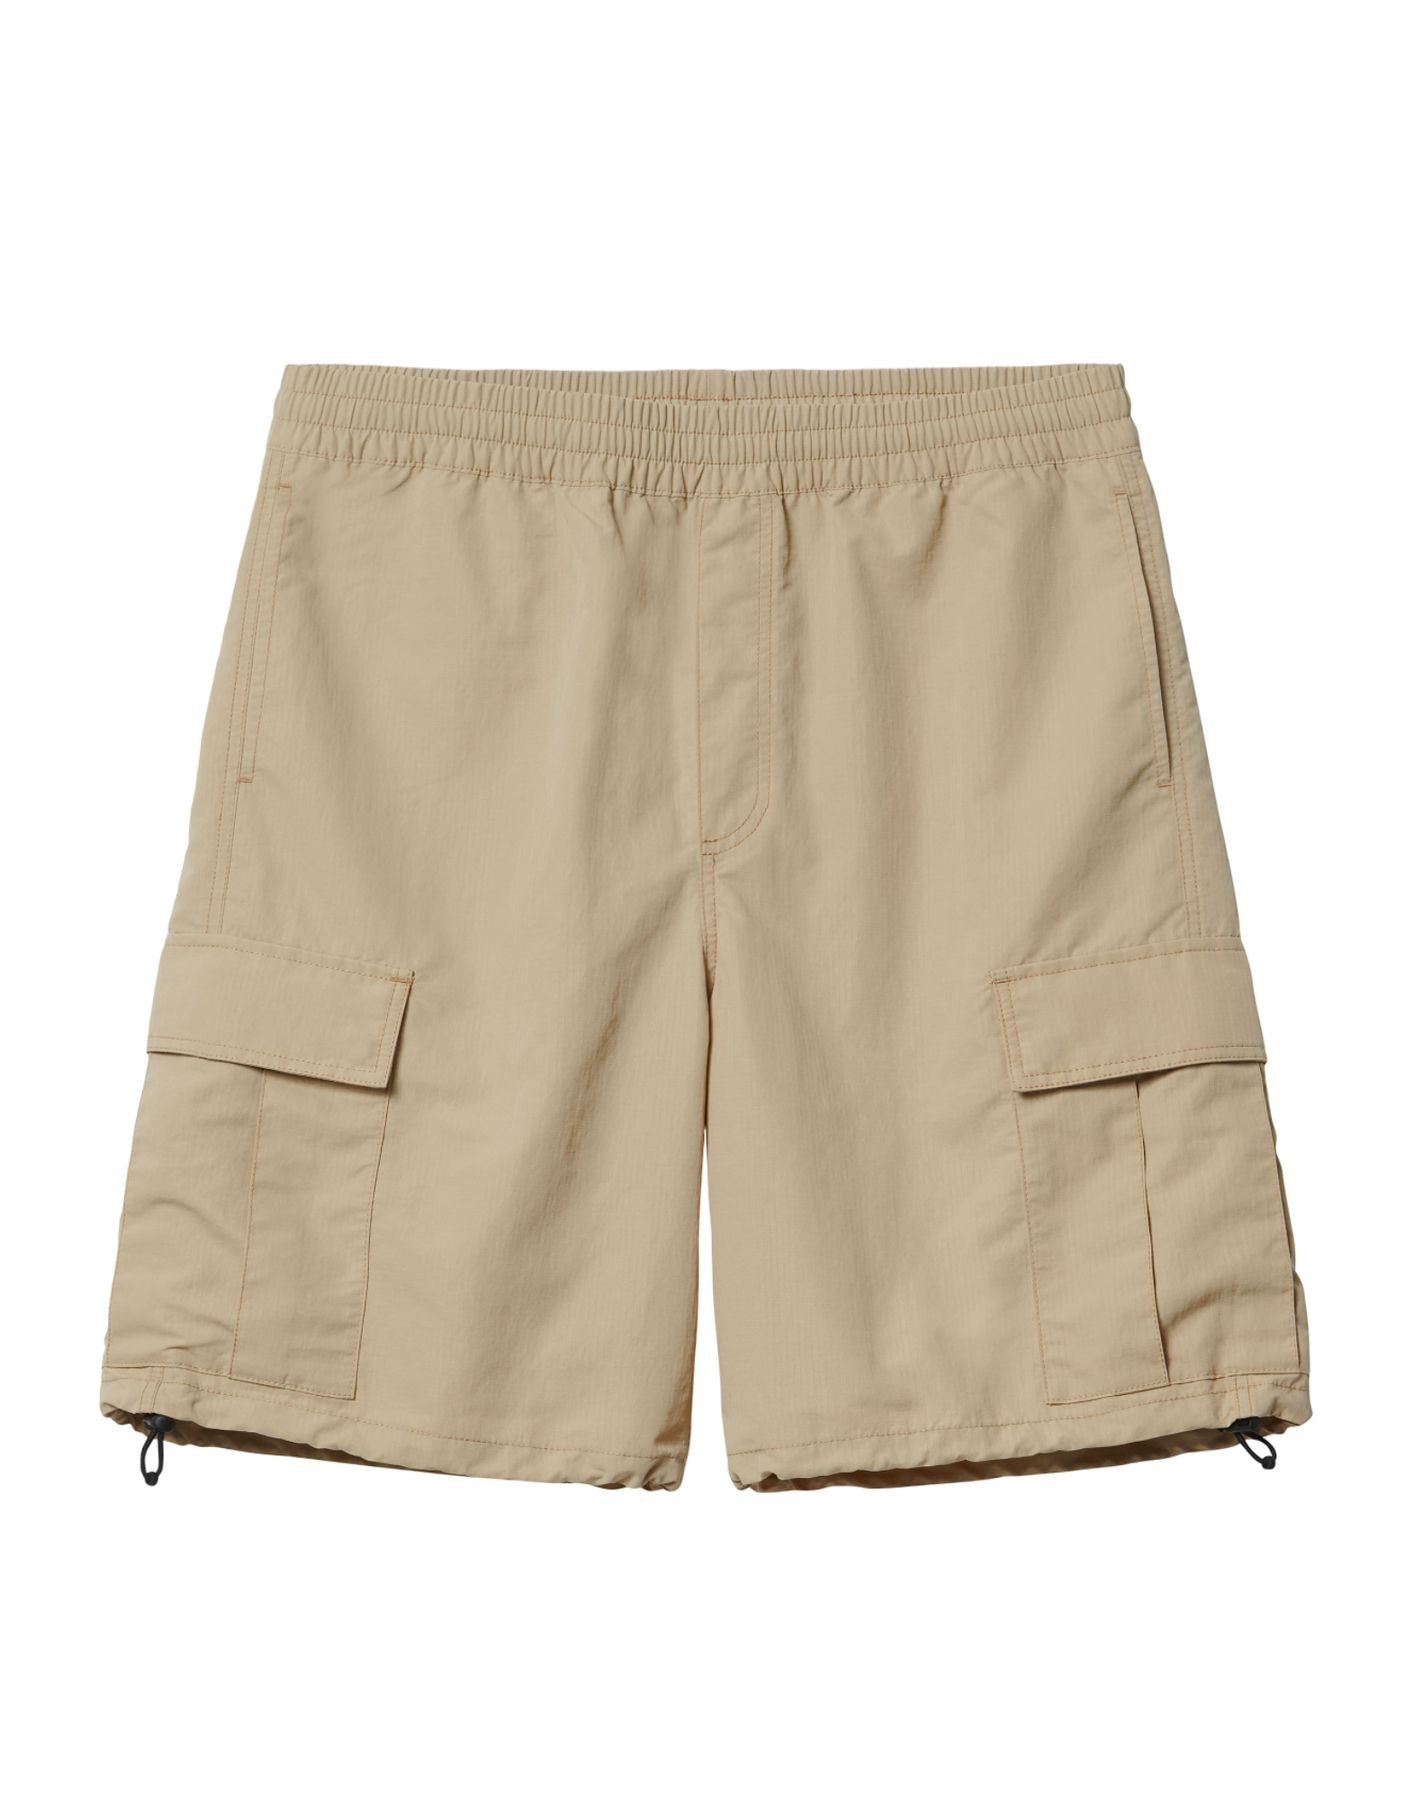 Pantalones cortos para hombre i033025 g1.xx beige CARHARTT WIP